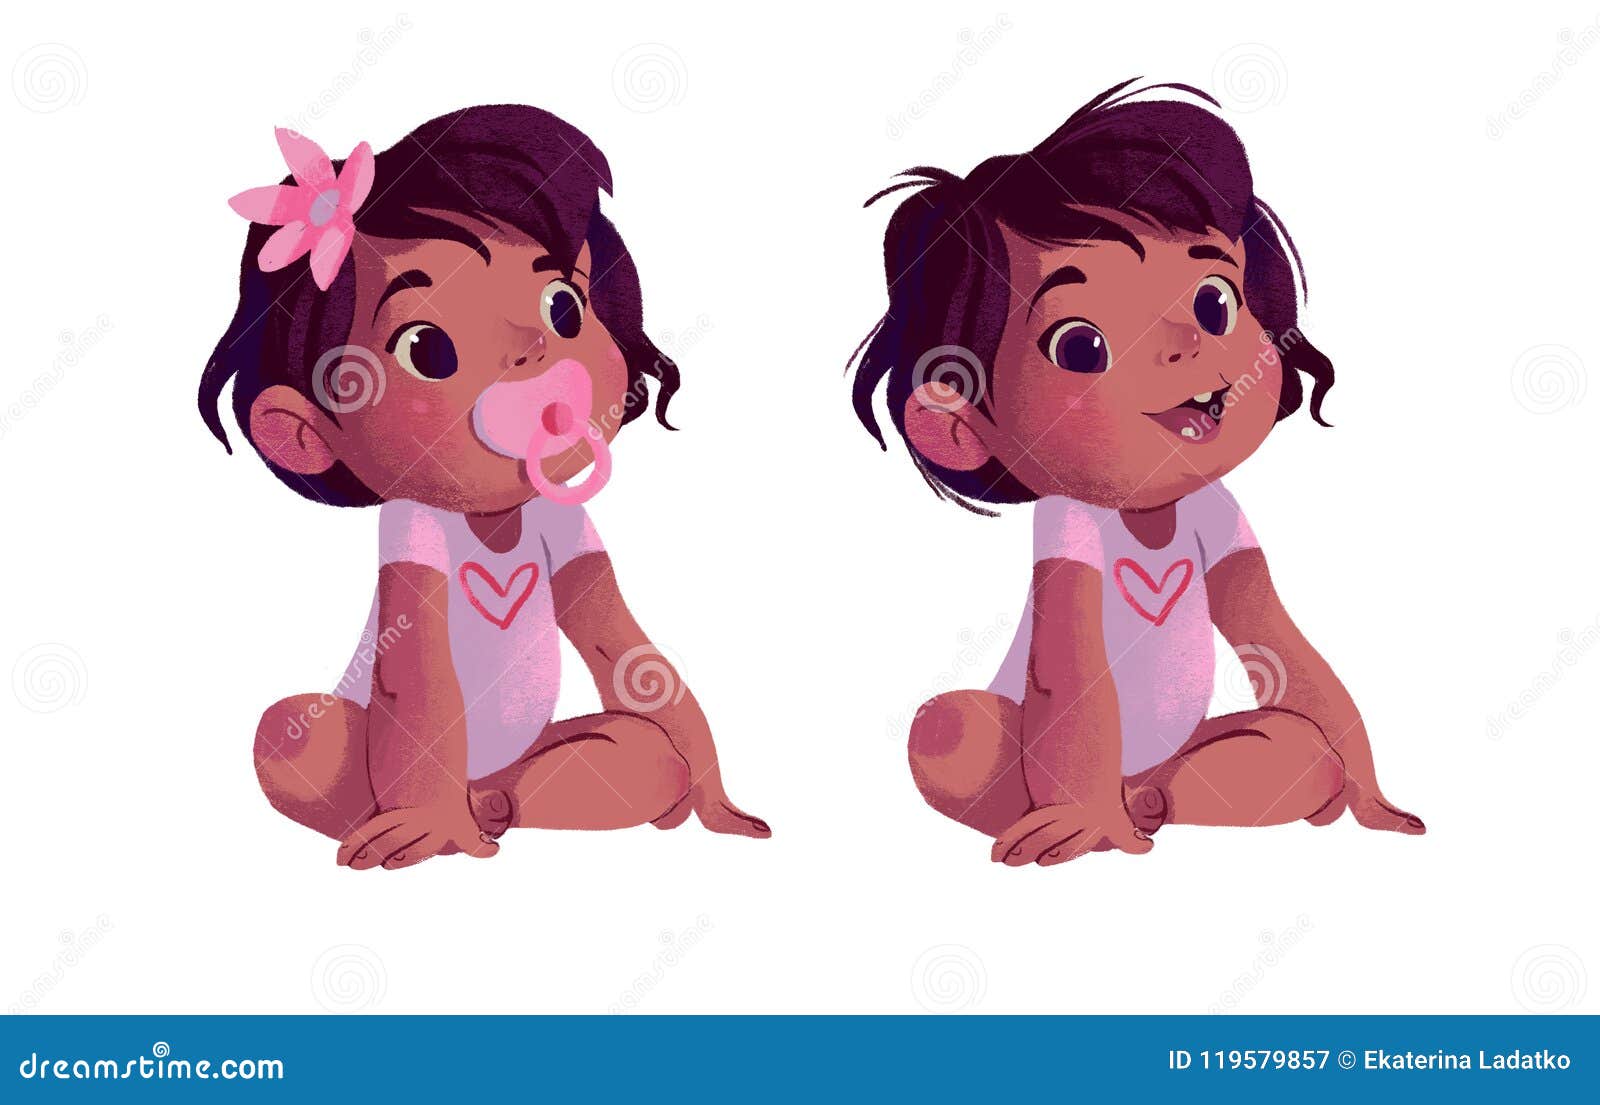 Two little baby girls stock illustration. Illustration of white - 119579857